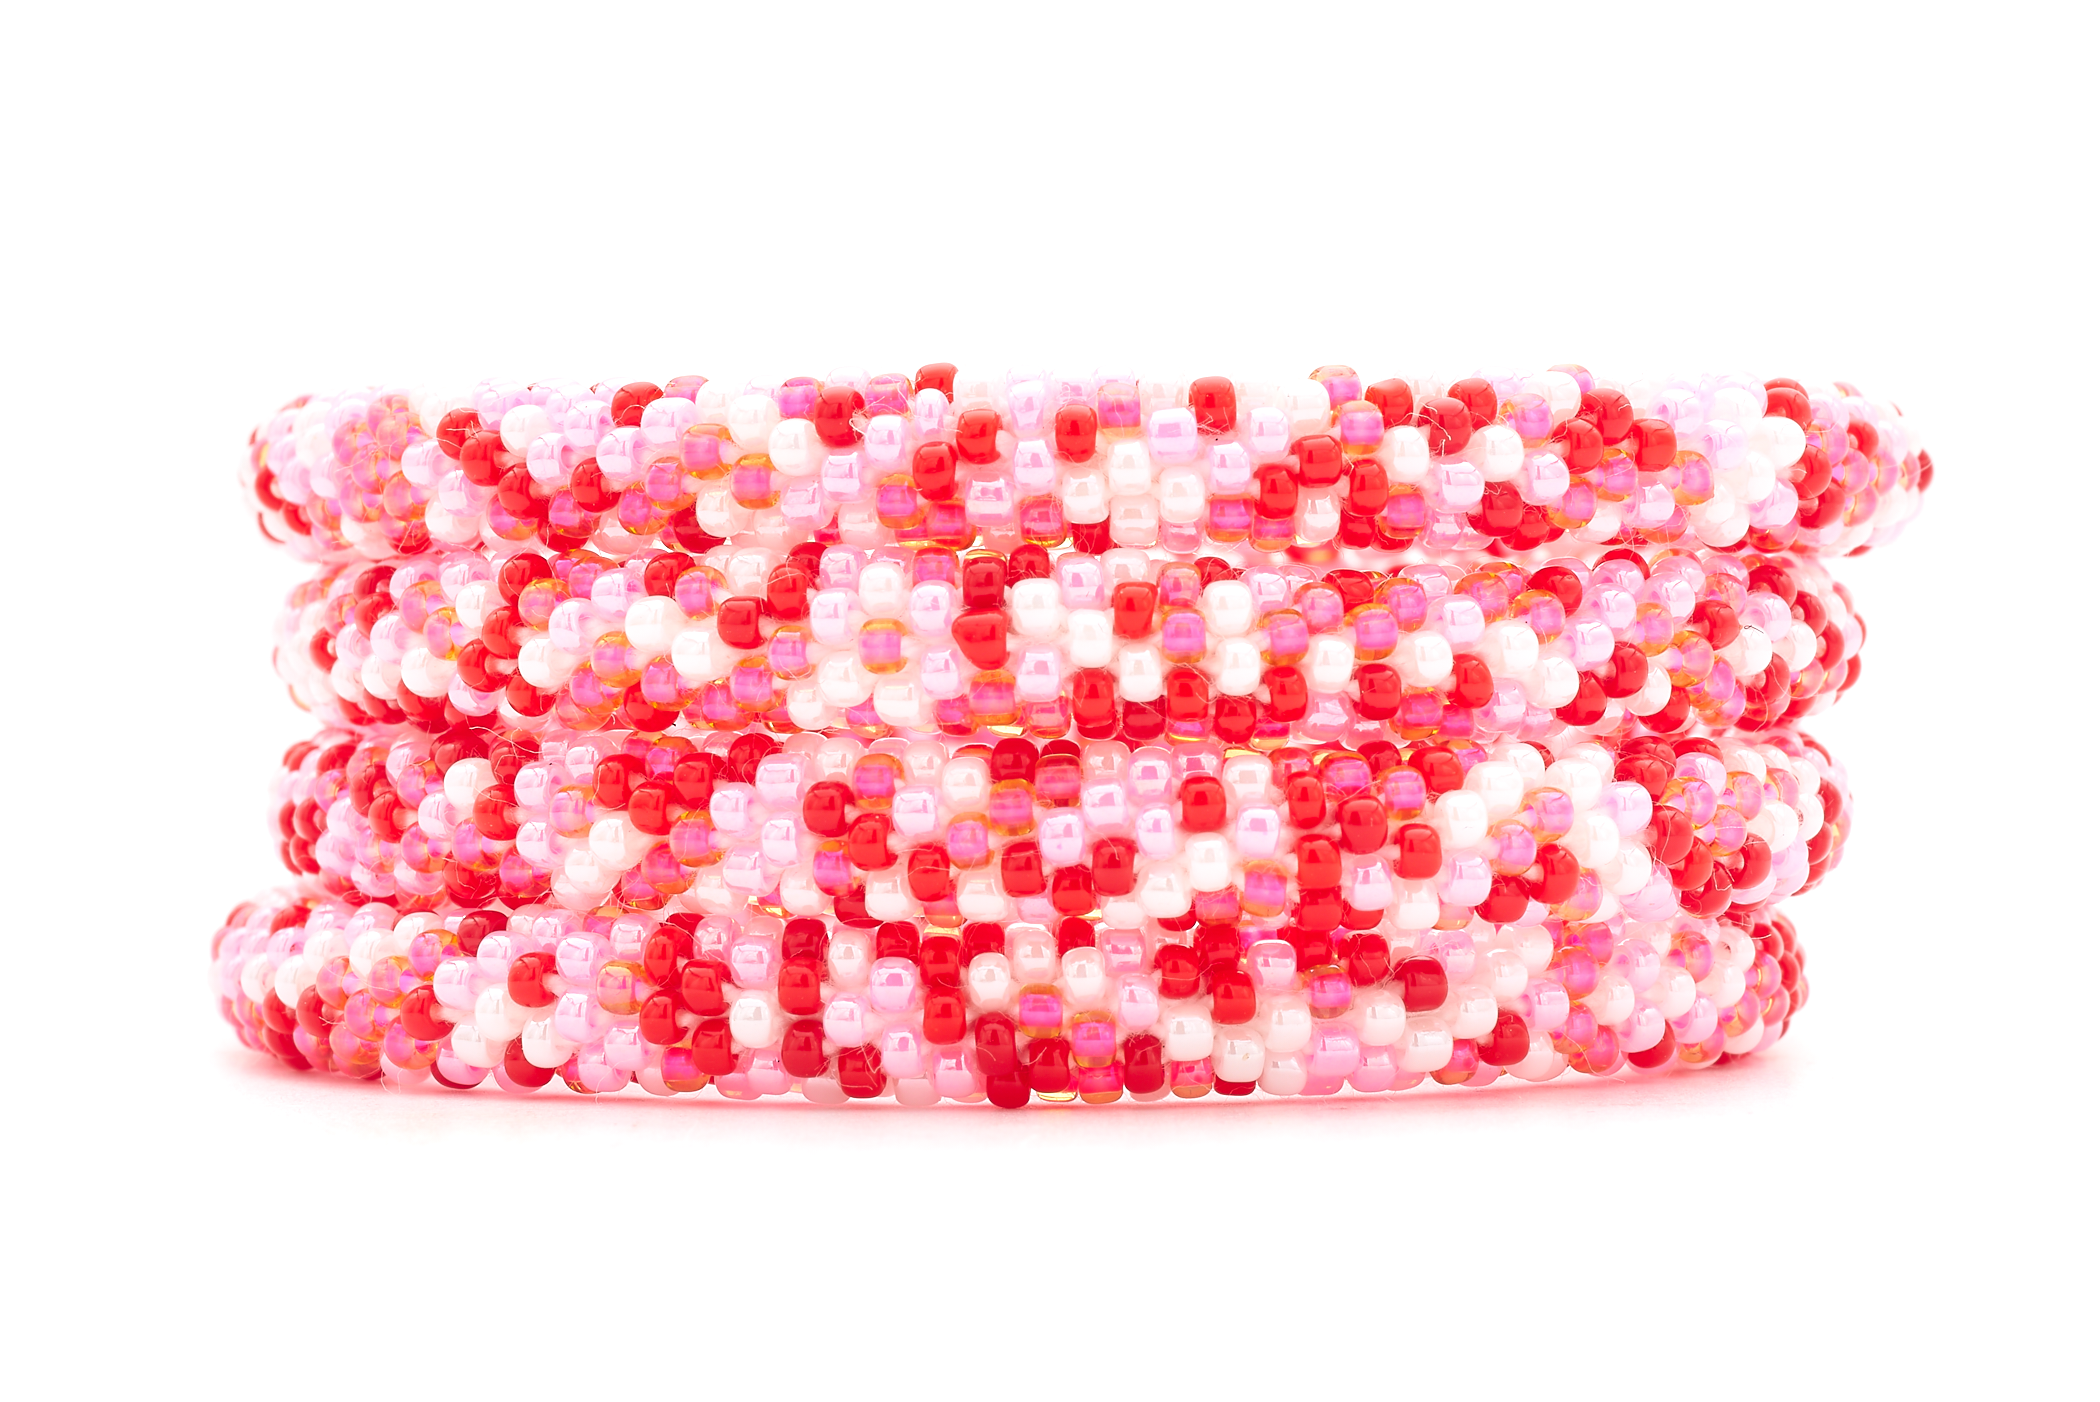 Sashka Co. Extended 8" Bracelet Pink / Red / White Cherry Blossom Sparkle Bracelet - Extended 8"